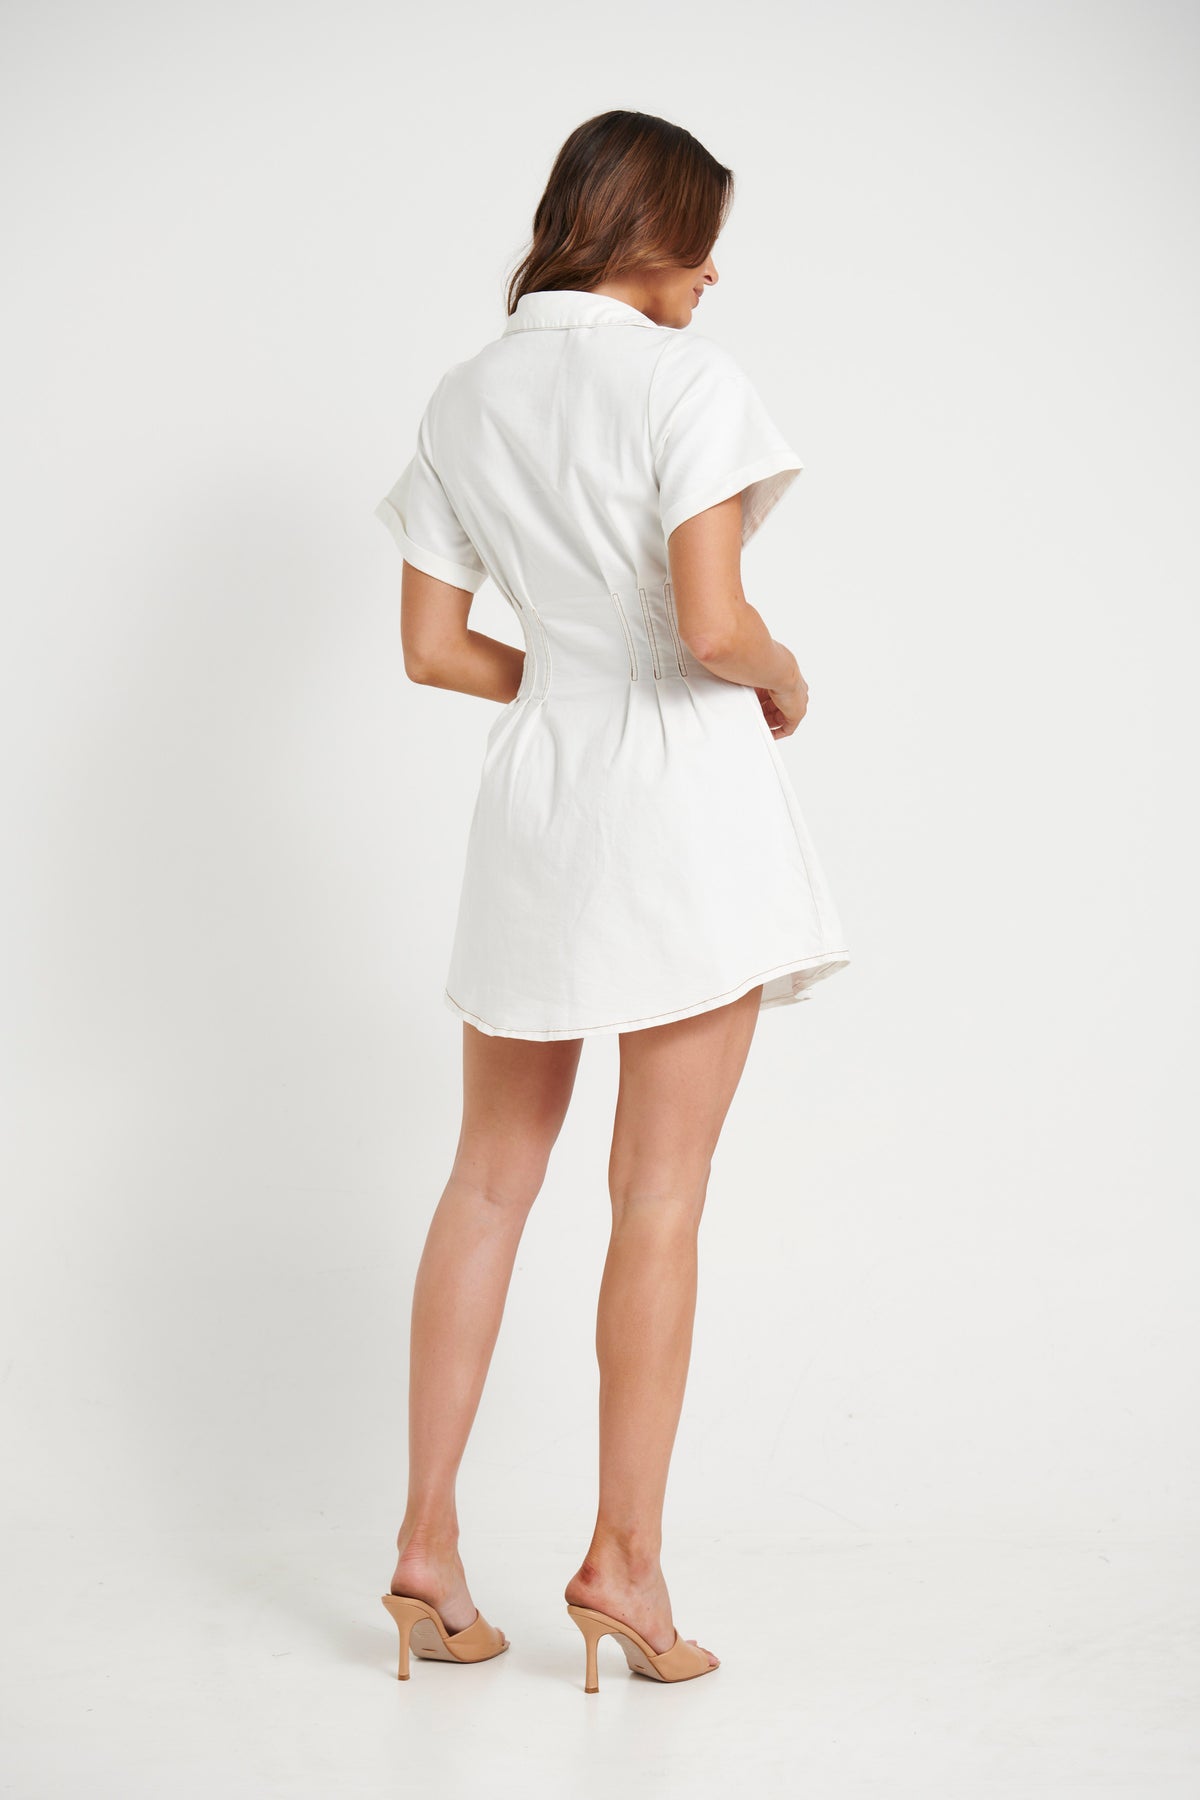 Isobel Denim Dress White